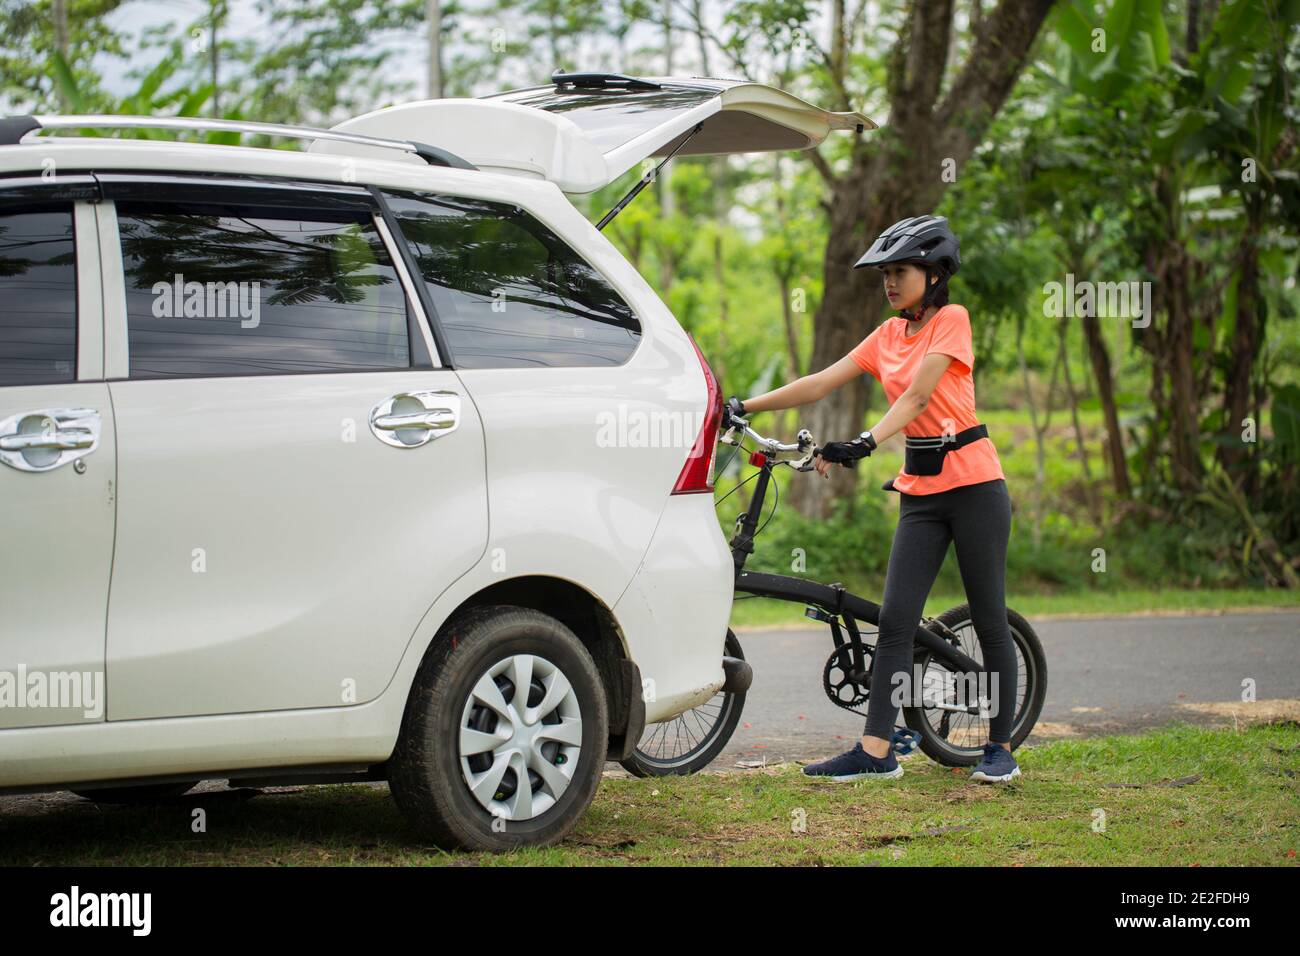 Asiatische Frau, die fertig Radfahren im Freien und laden Die Fahrräder ins  Auto Stockfotografie - Alamy